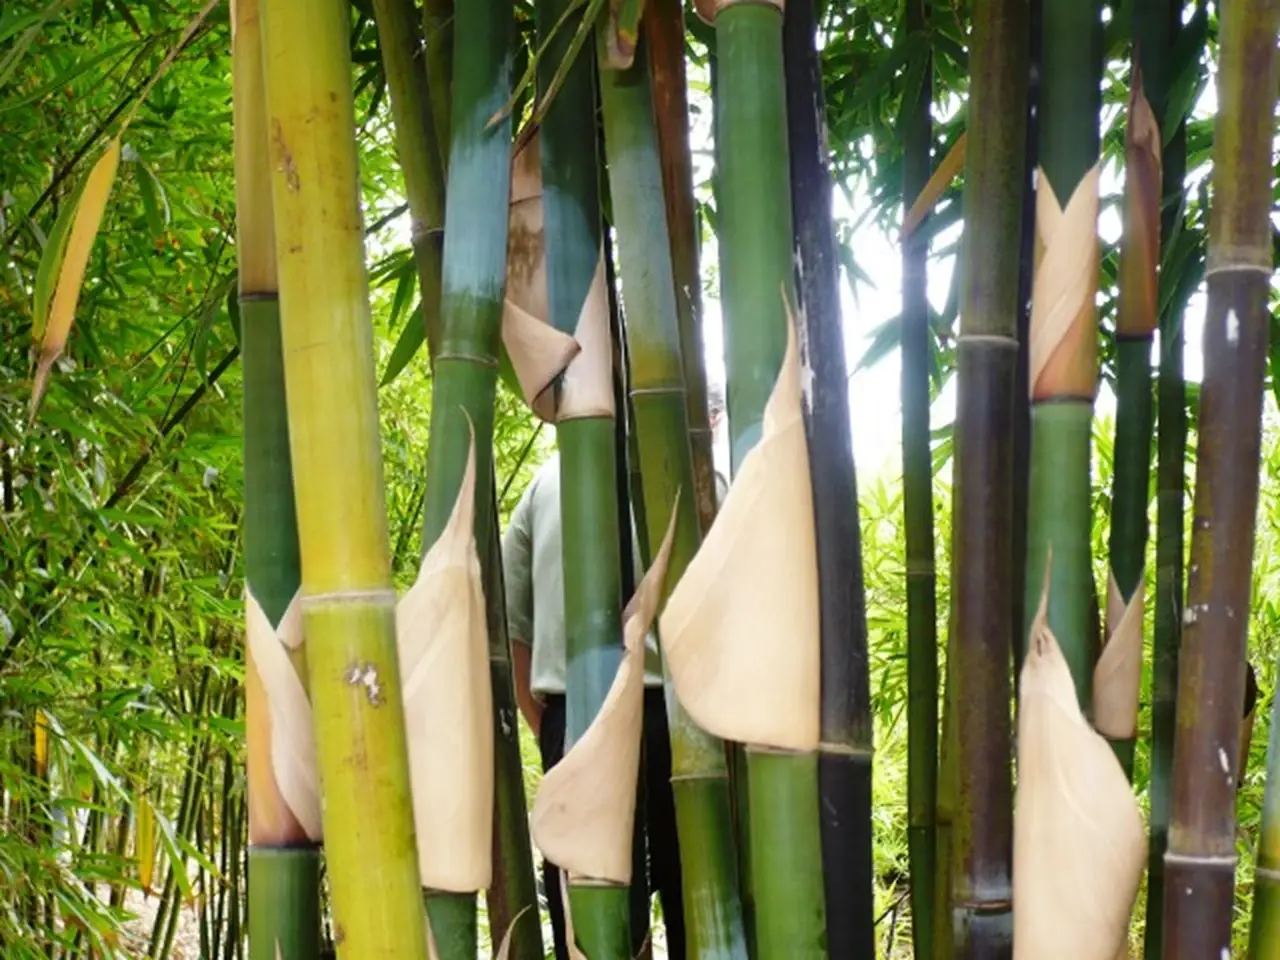 Bamboo Farming